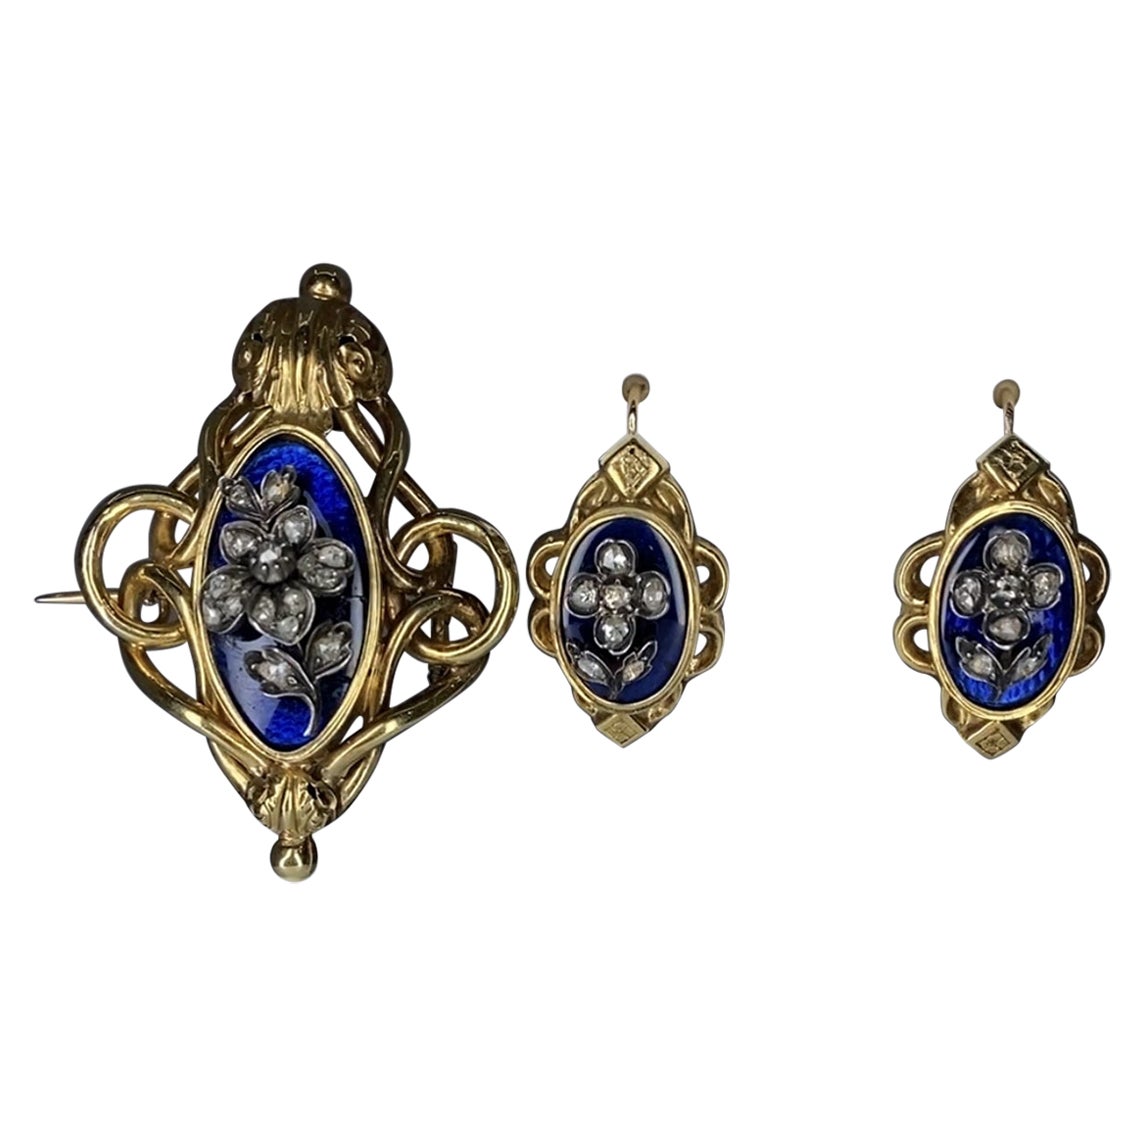  Boucles d'oreilles et broche en or 18 carats, émail et diamants, Napoléon III